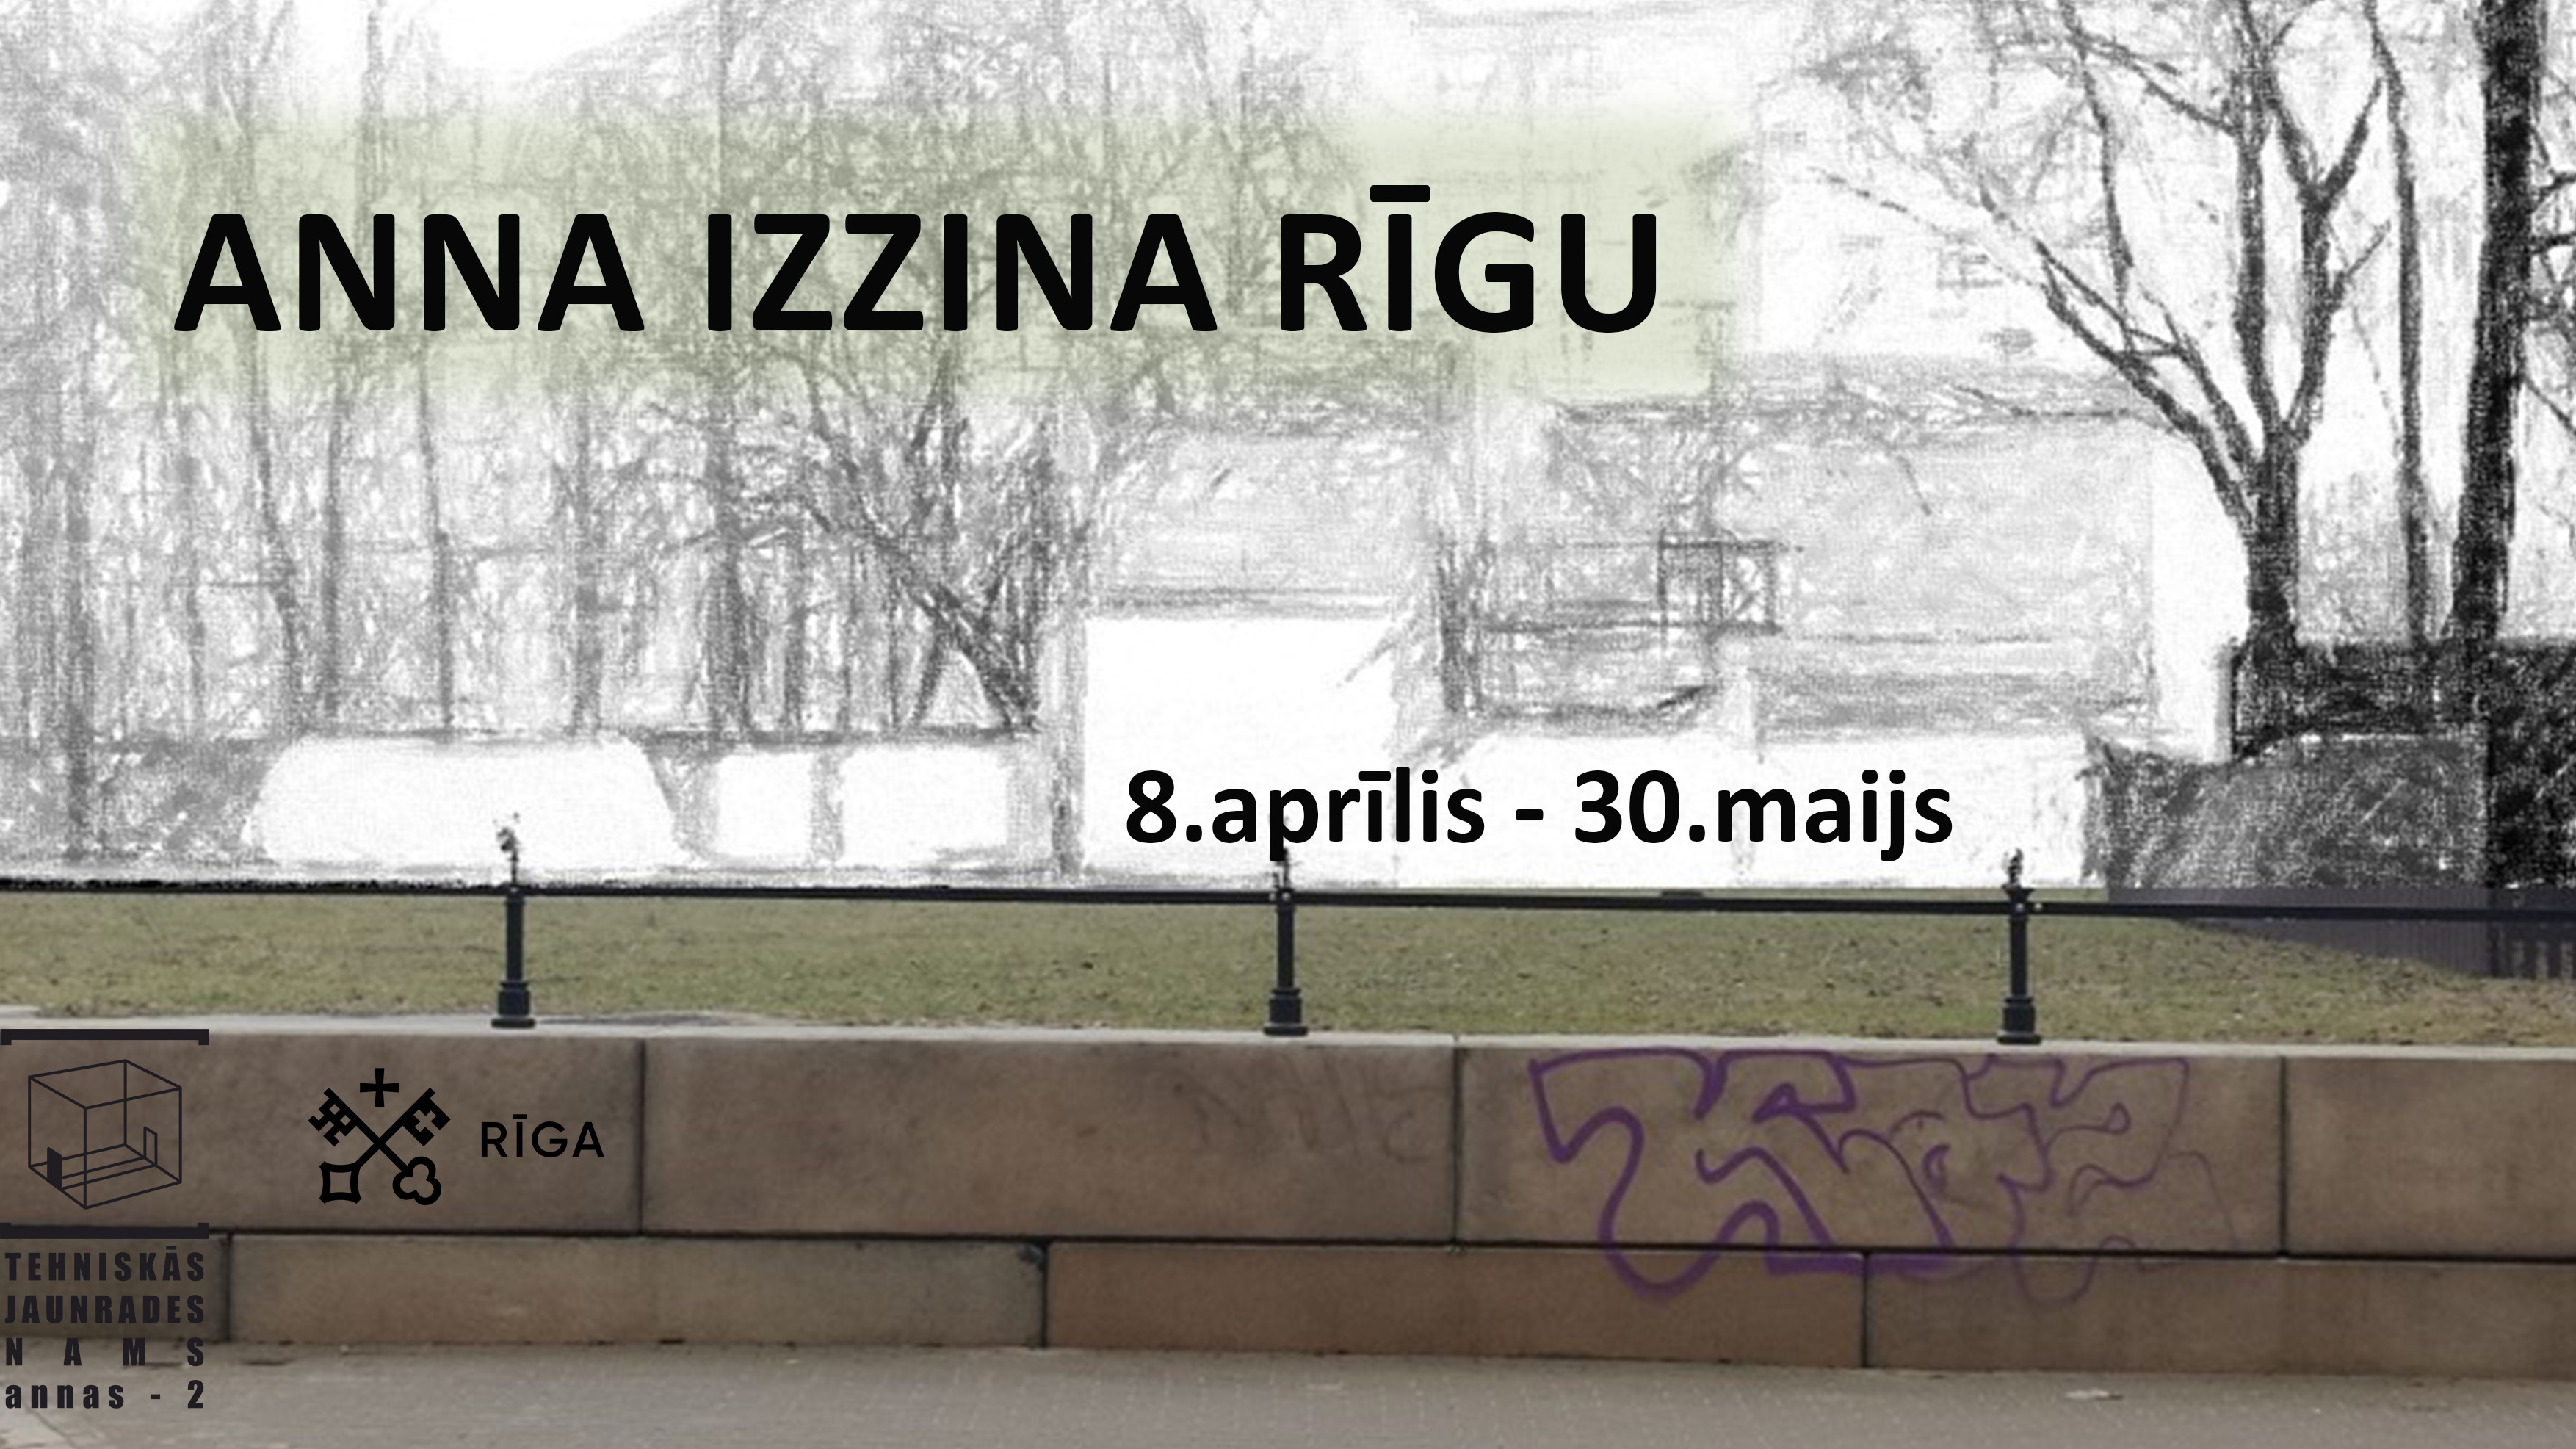 Iespēja piedalīties Rīgas bērnu un jauniešu stikla mākslas konkursā “Anna izzina Rīgu” 